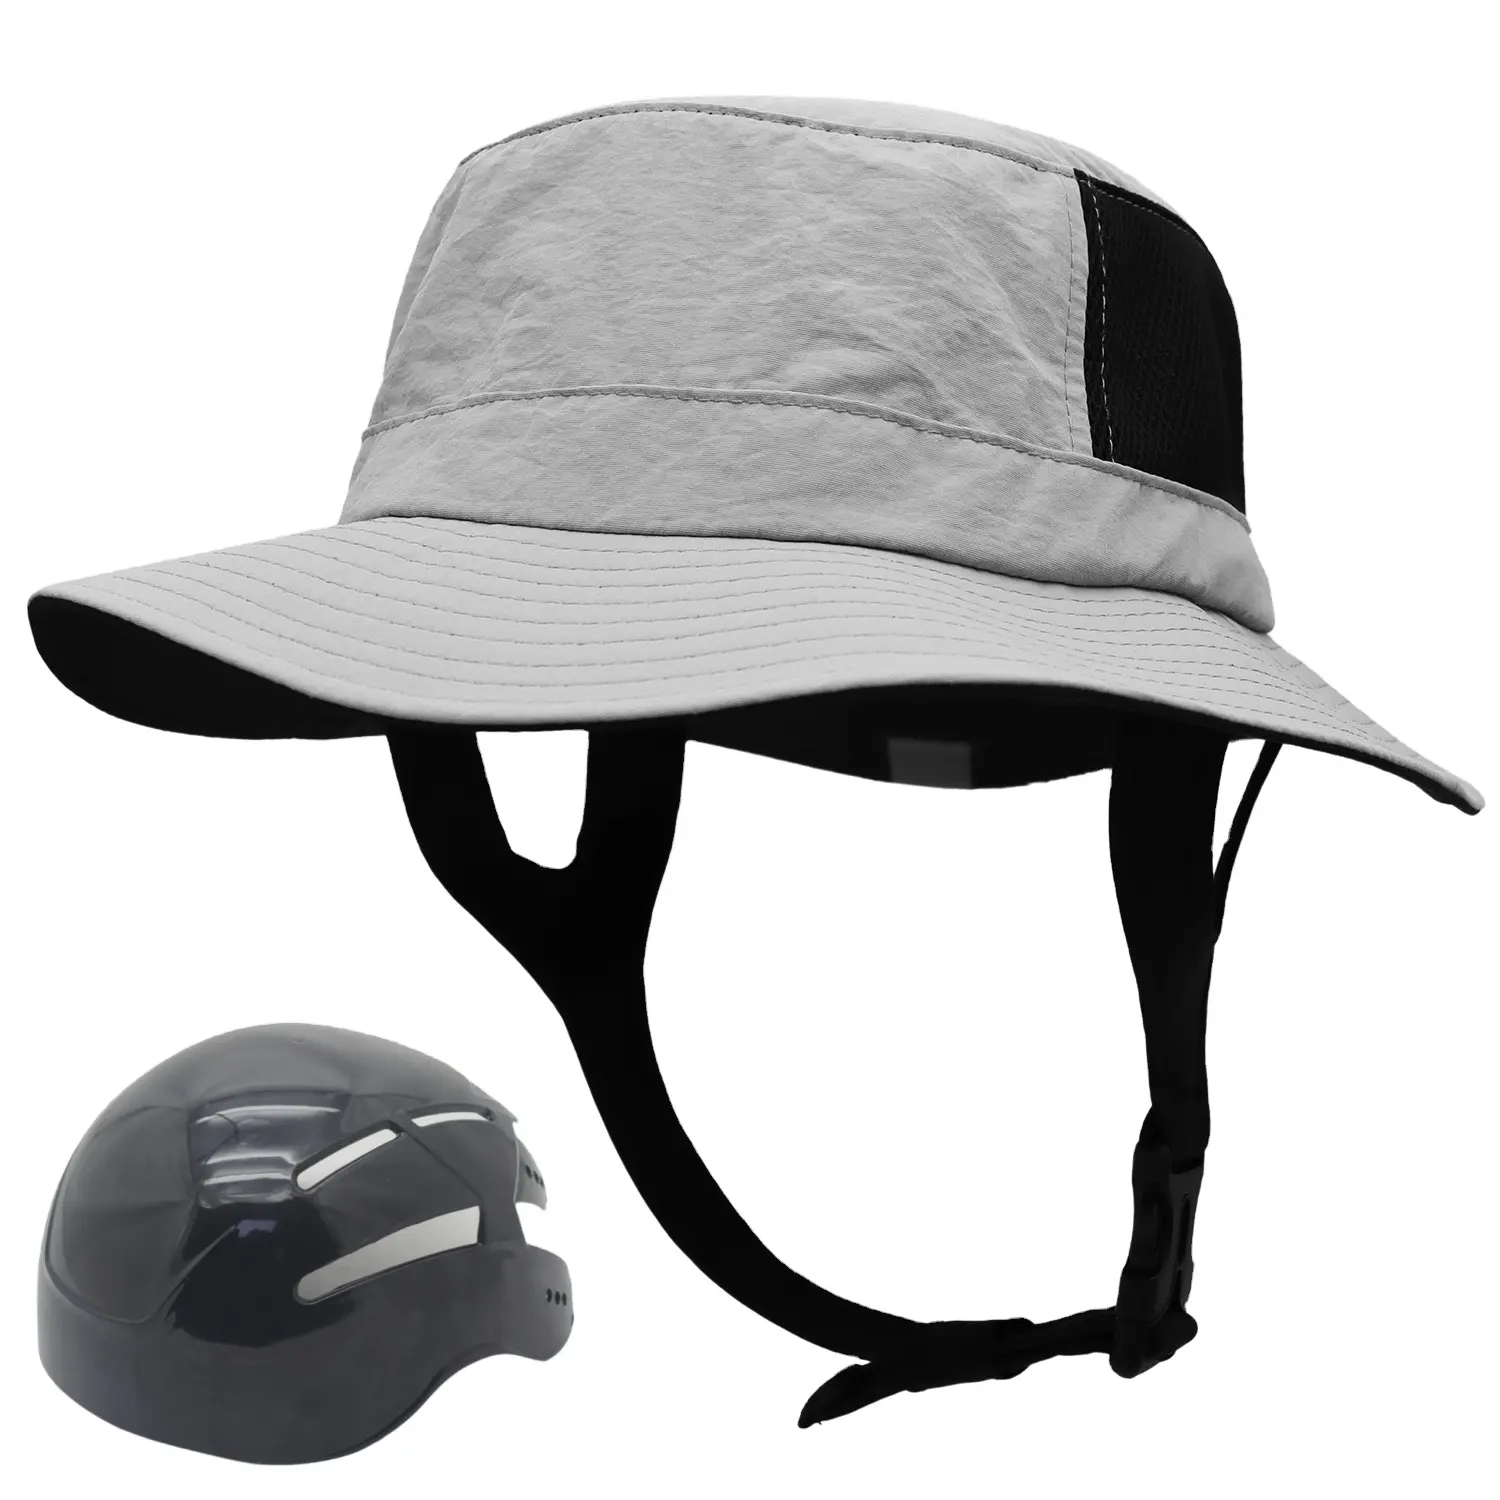 Proteção solar com aba removível do pescoço para surfar, canoagem, esportes aquáticos Bucket Surf Hat with helmet bump cap